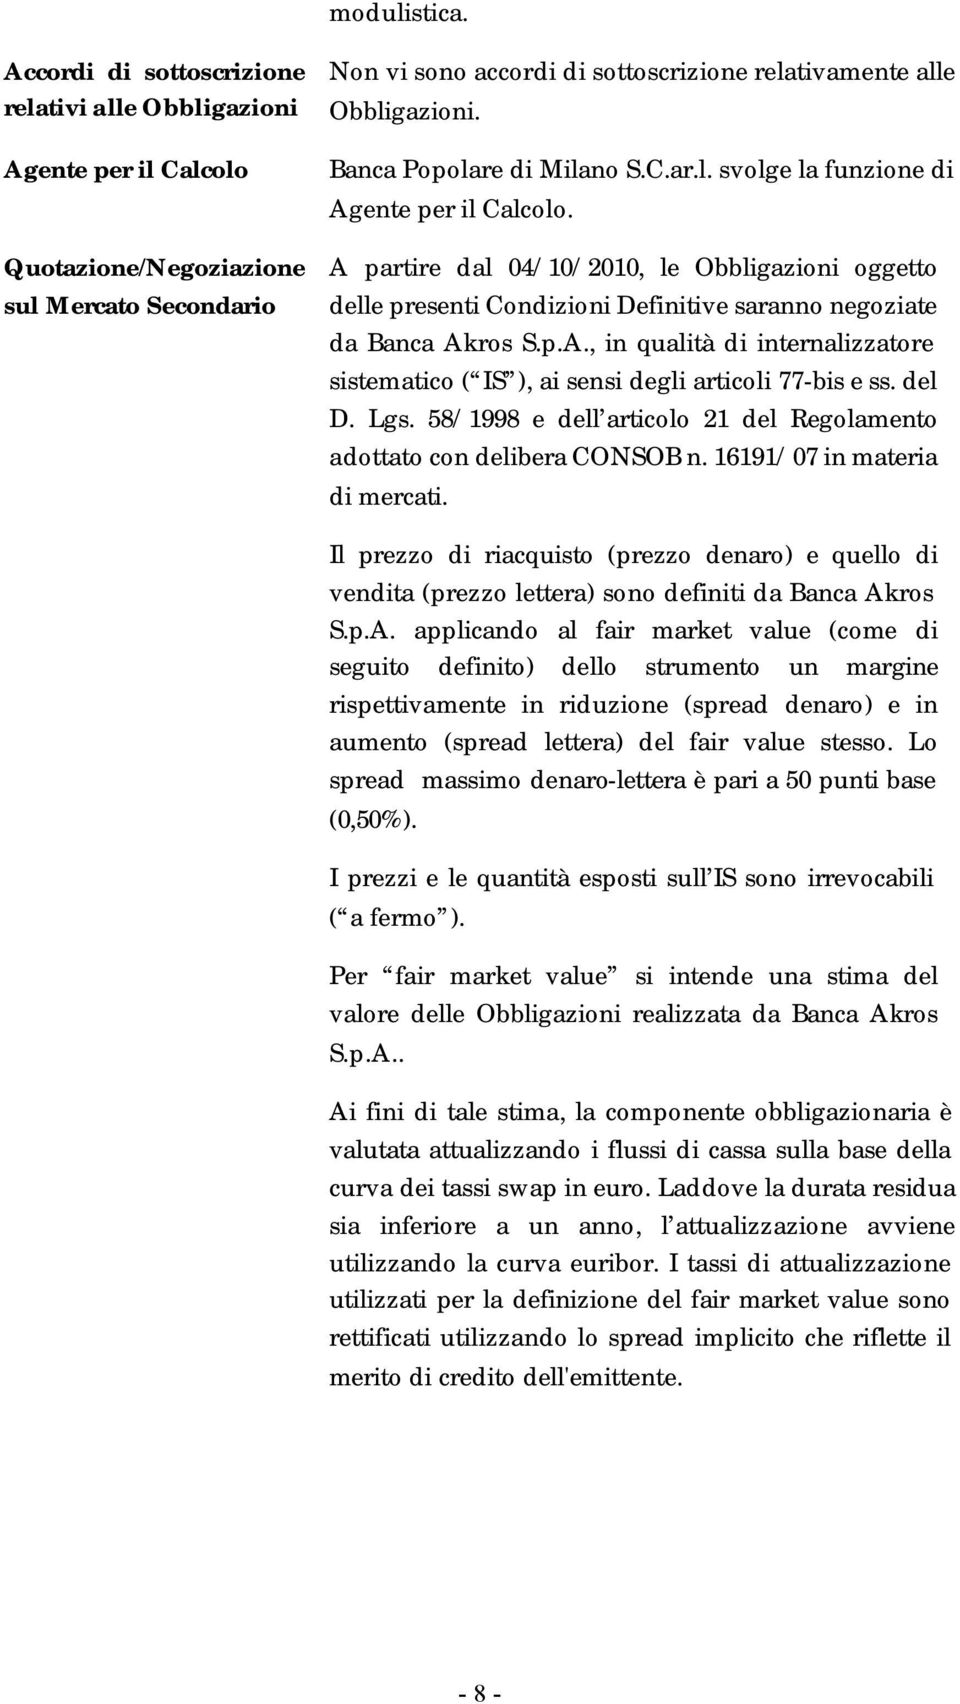 Banca Popolare di Milano S.C.ar.l. svolge la funzione di Agente per il Calcolo.